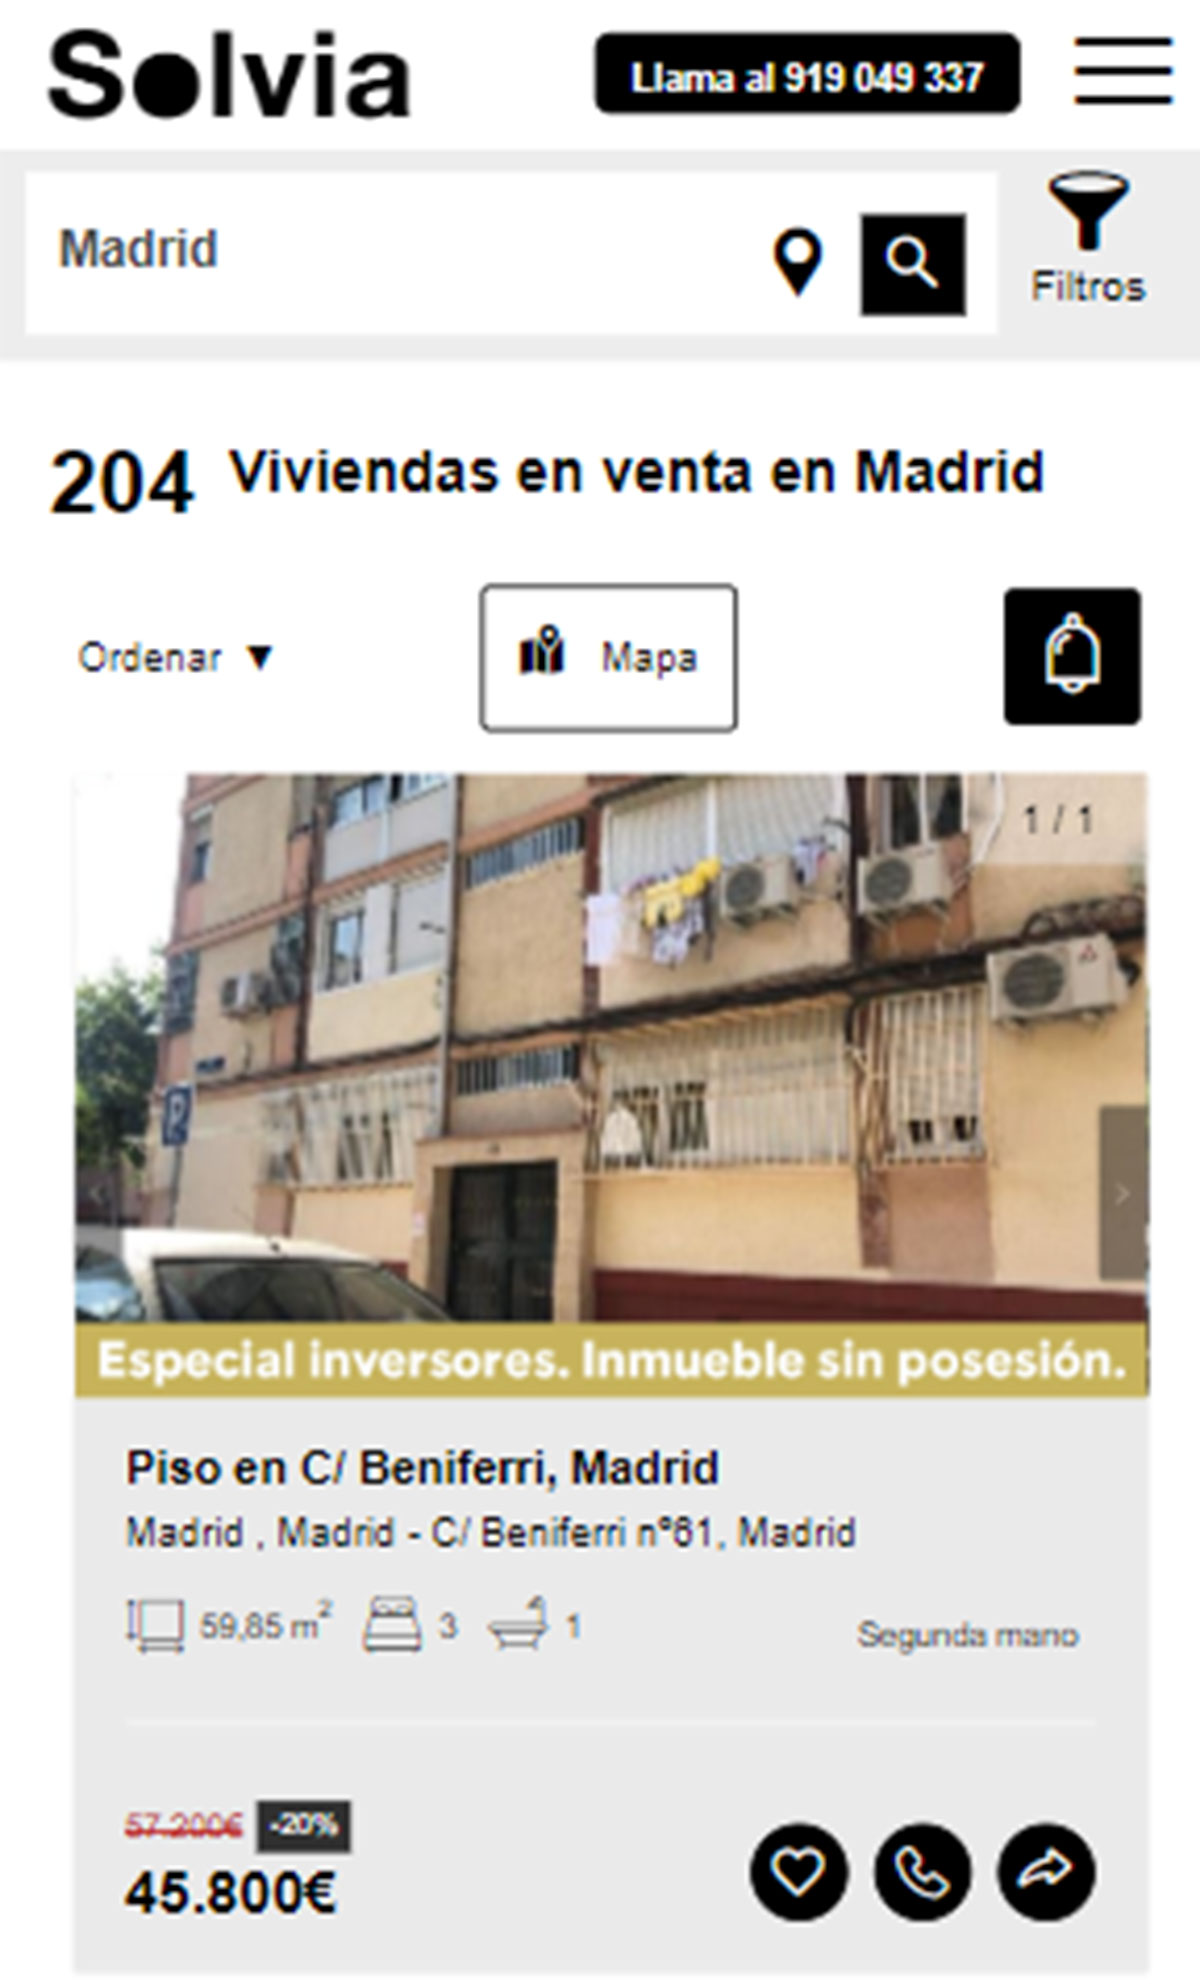 Piso en la ciudad de Madrid por 45.800 euros